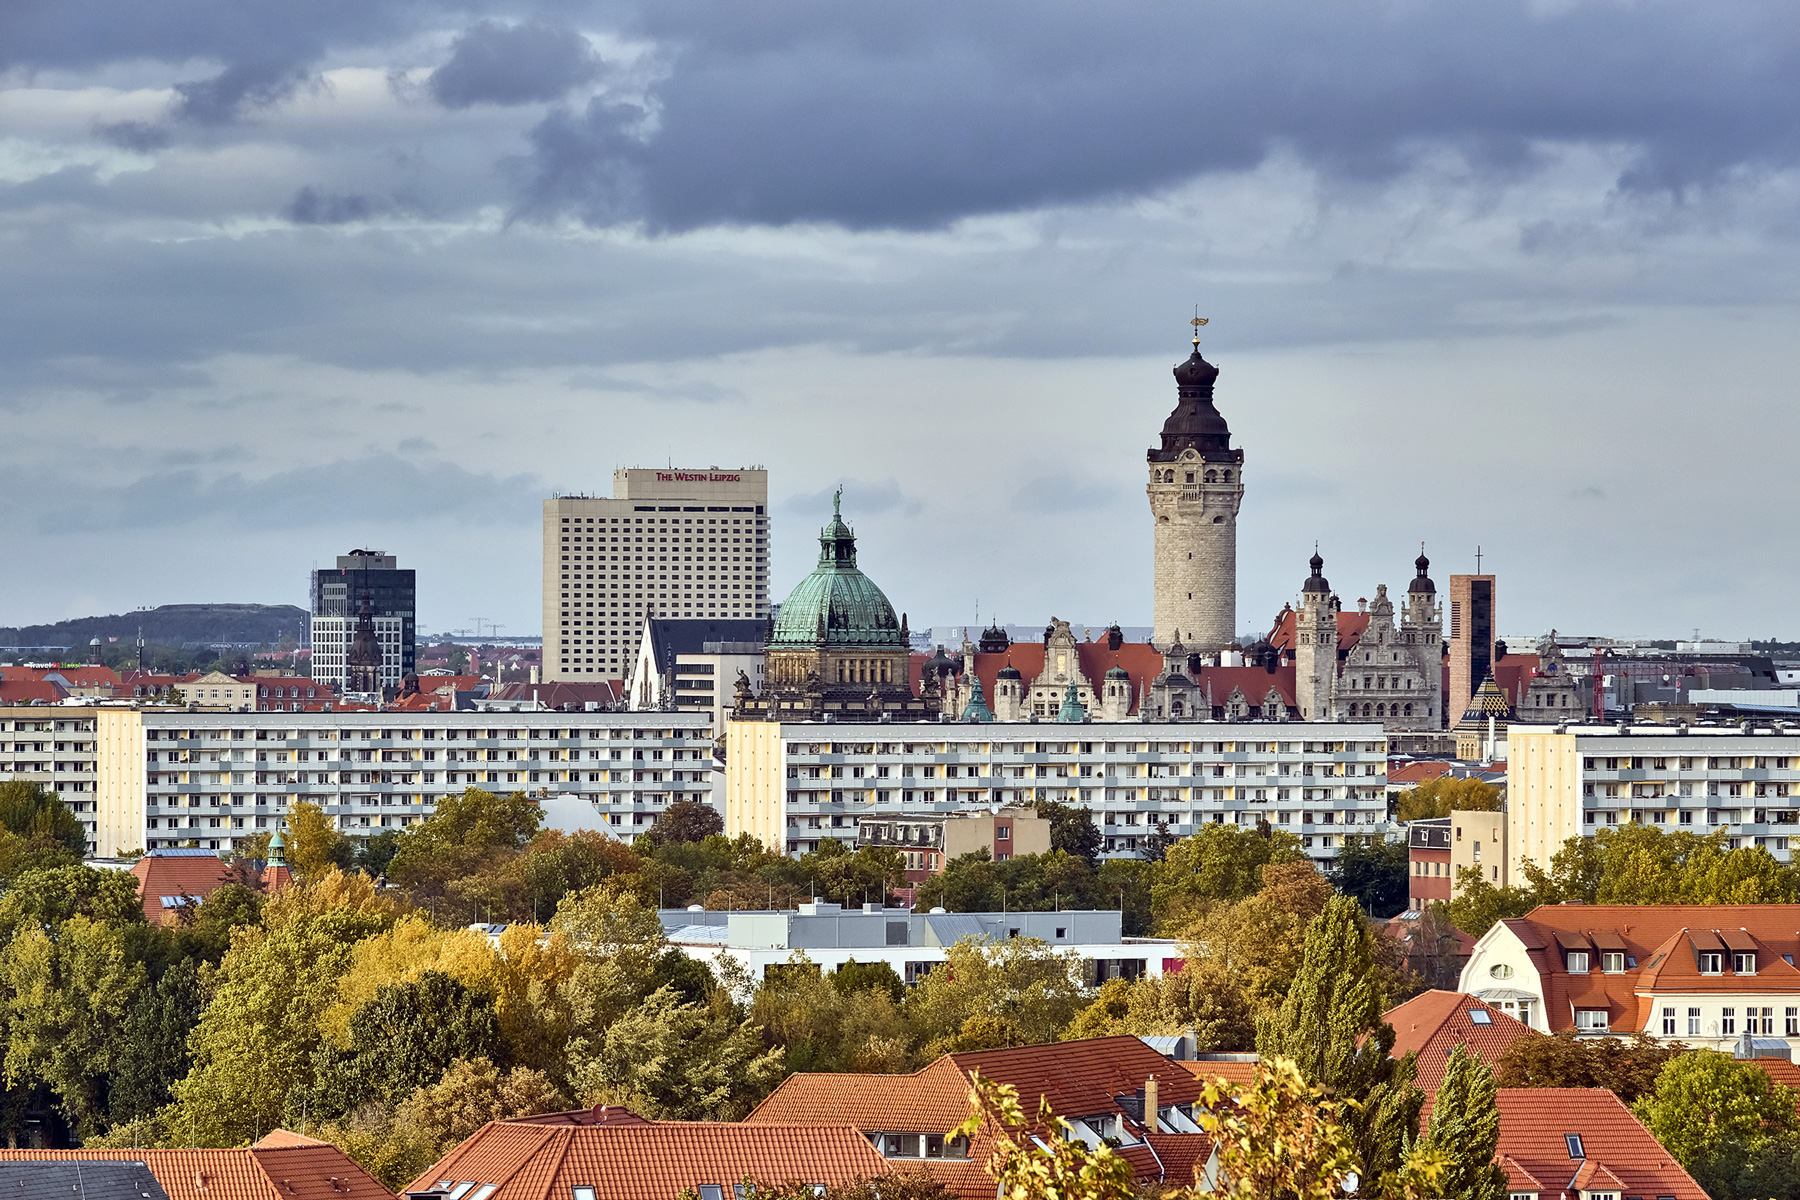   Grünes Licht | Stadtrat beschließt Grünsatzung für ein nachhaltiges Leipzig  